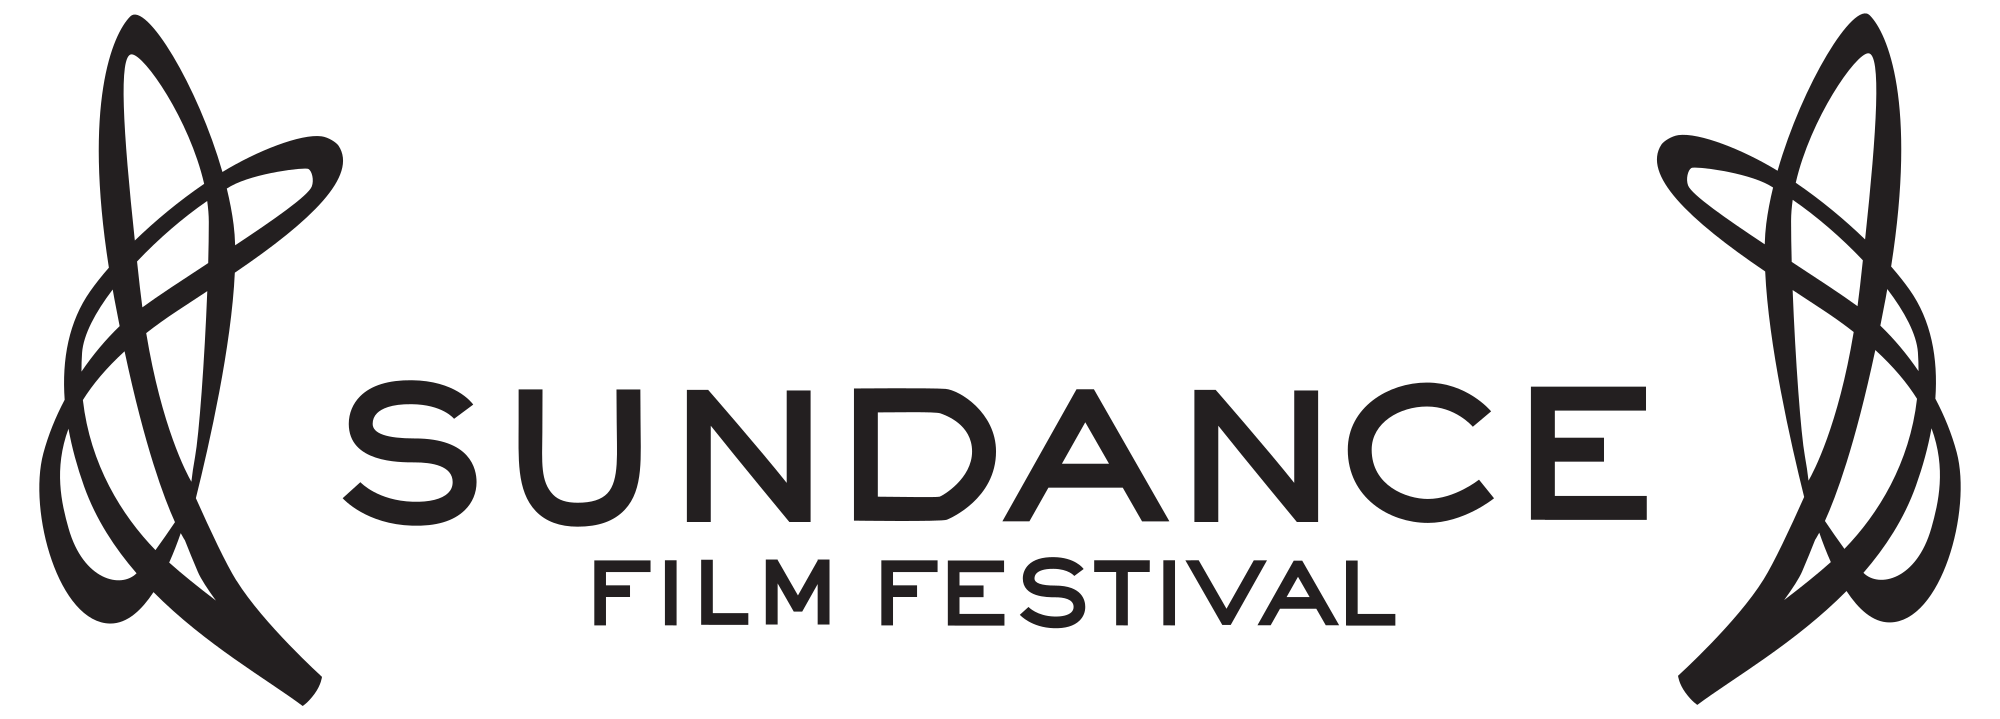 Sundancefilmfestival-logo.svg.png